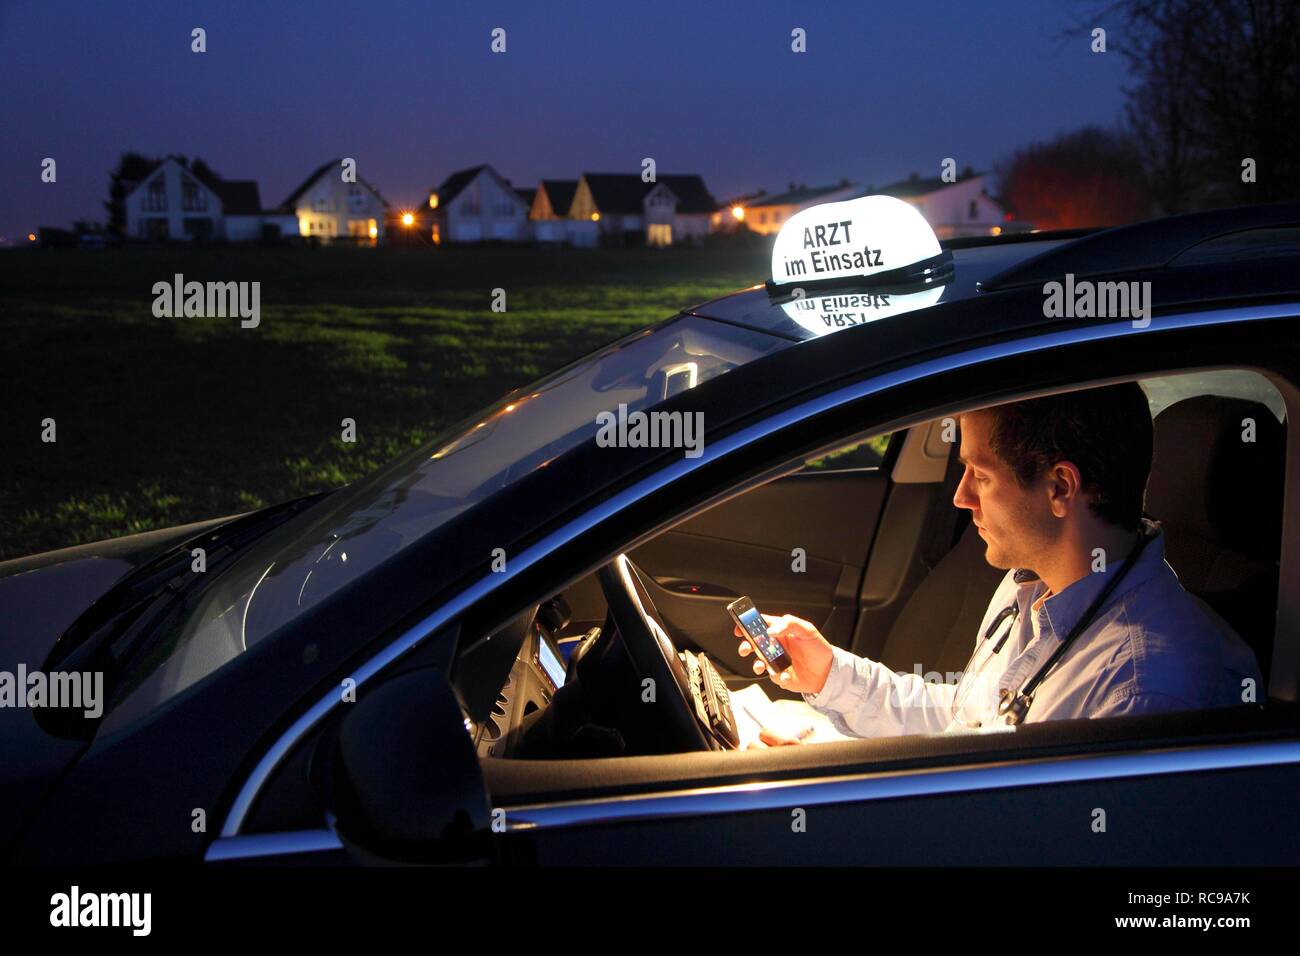 Junge GP, Arzt für Allgemeinmedizin im Land arbeiten, die anrufen und sich Notizen in seinem Auto nach einem Abend home Stockfoto